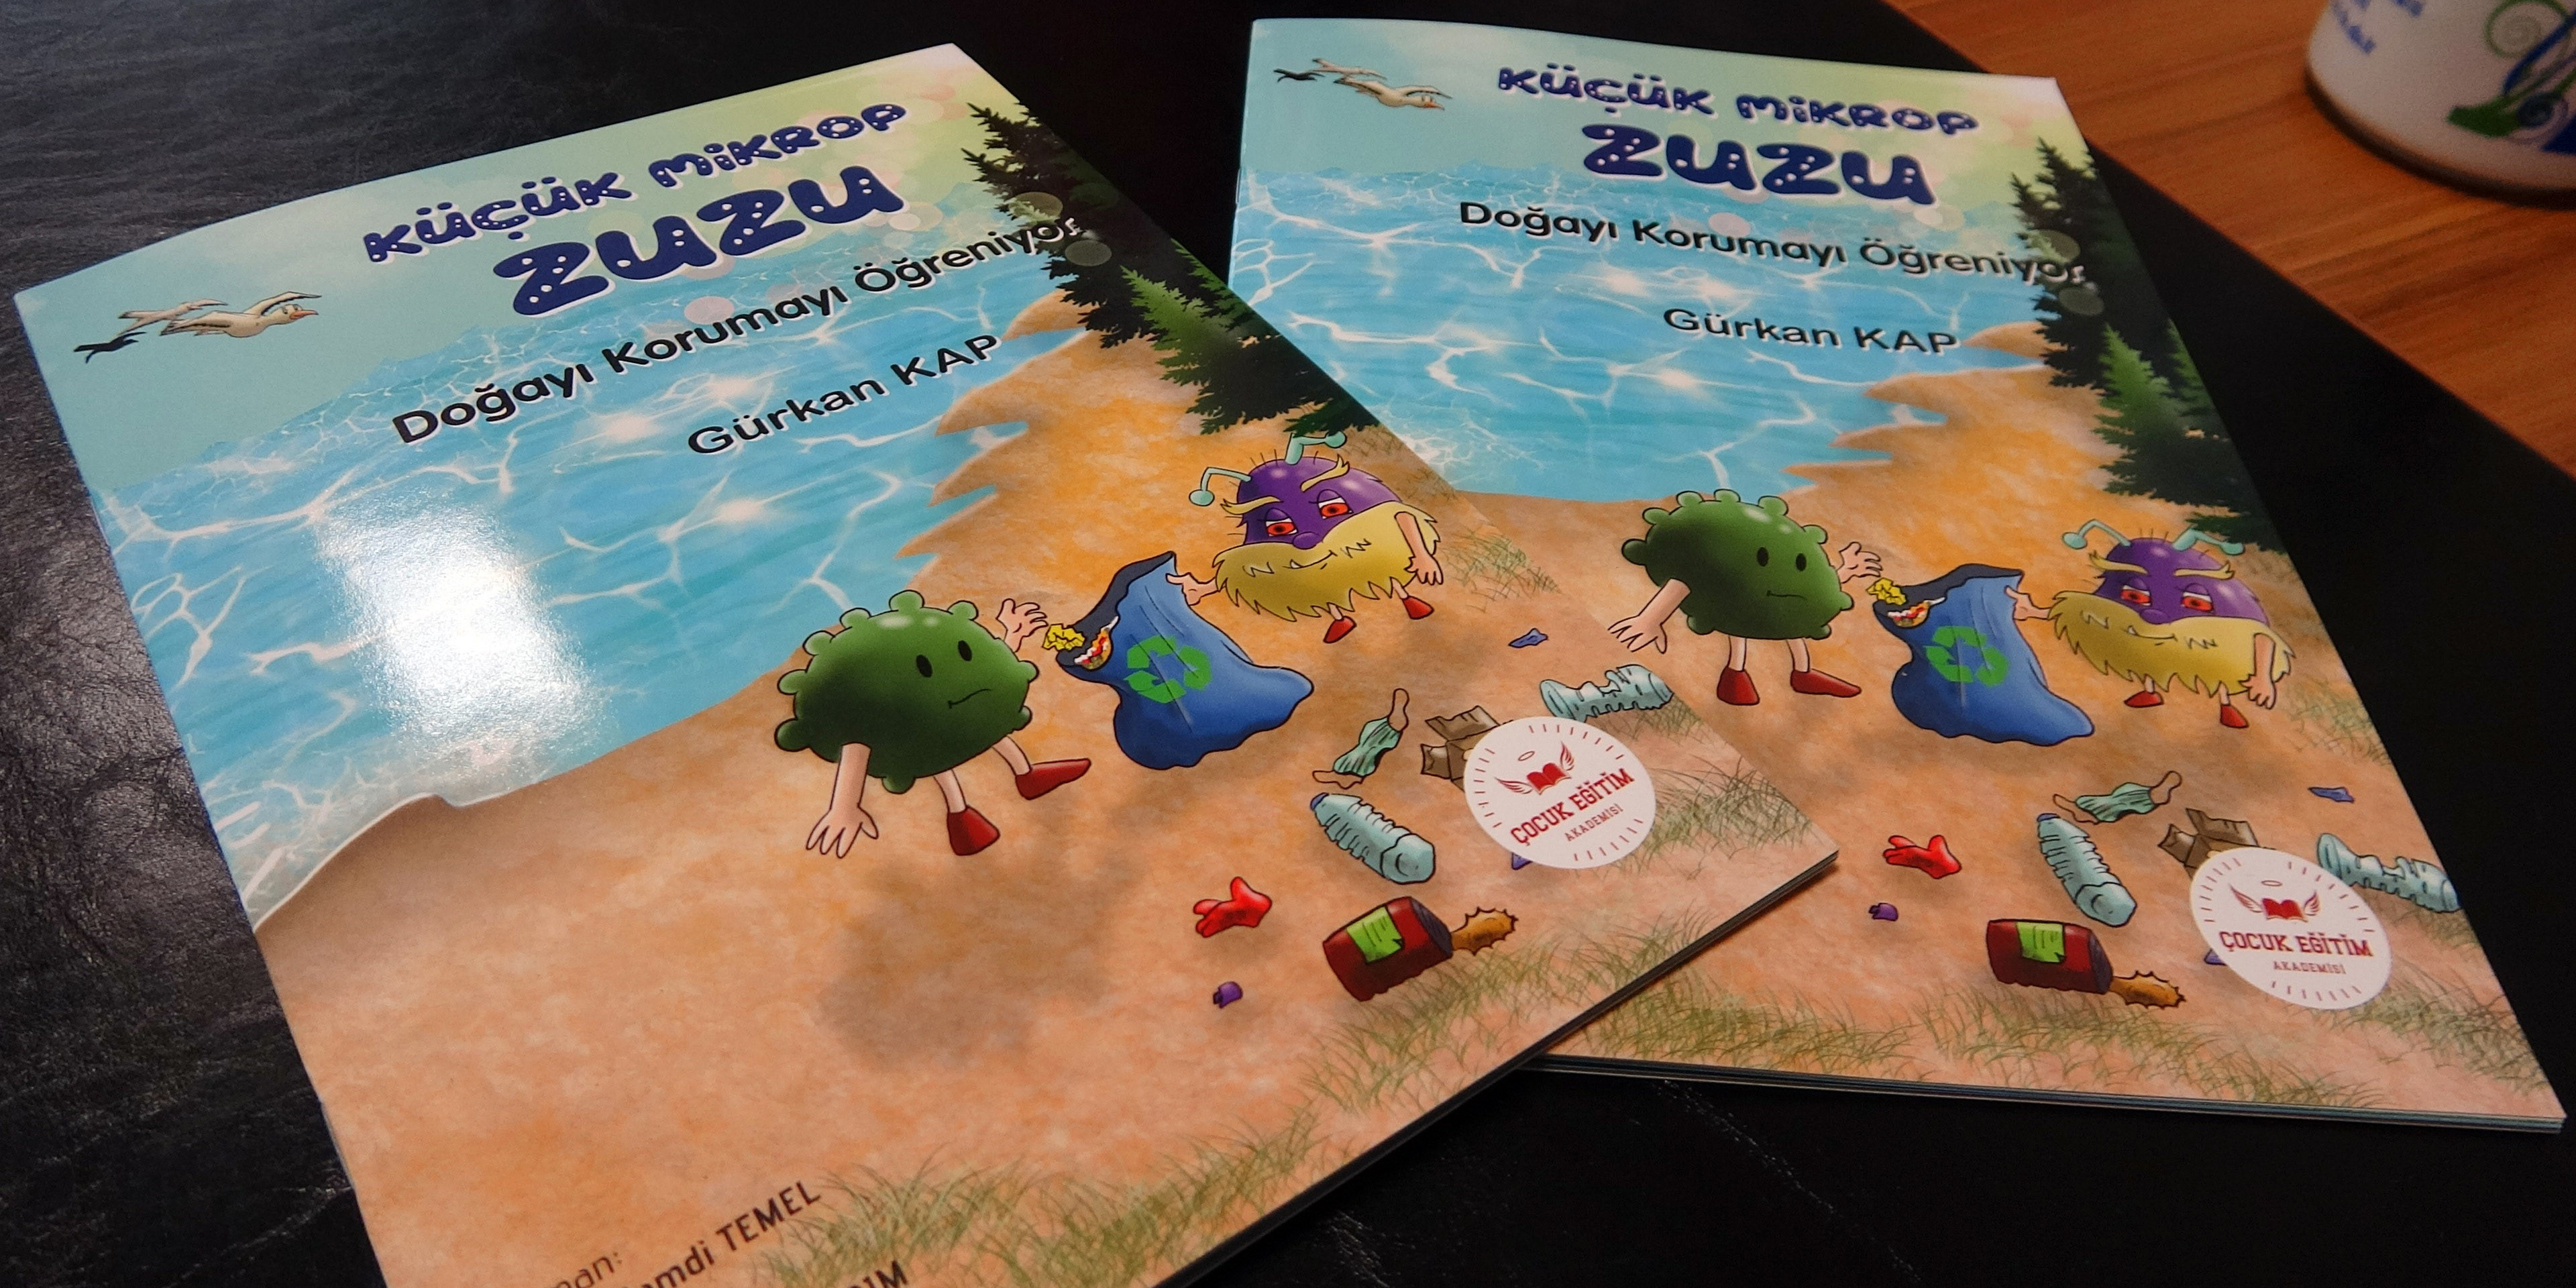 Yozgat’ta çocuklara çevre bilinci kitapla aşılanacak